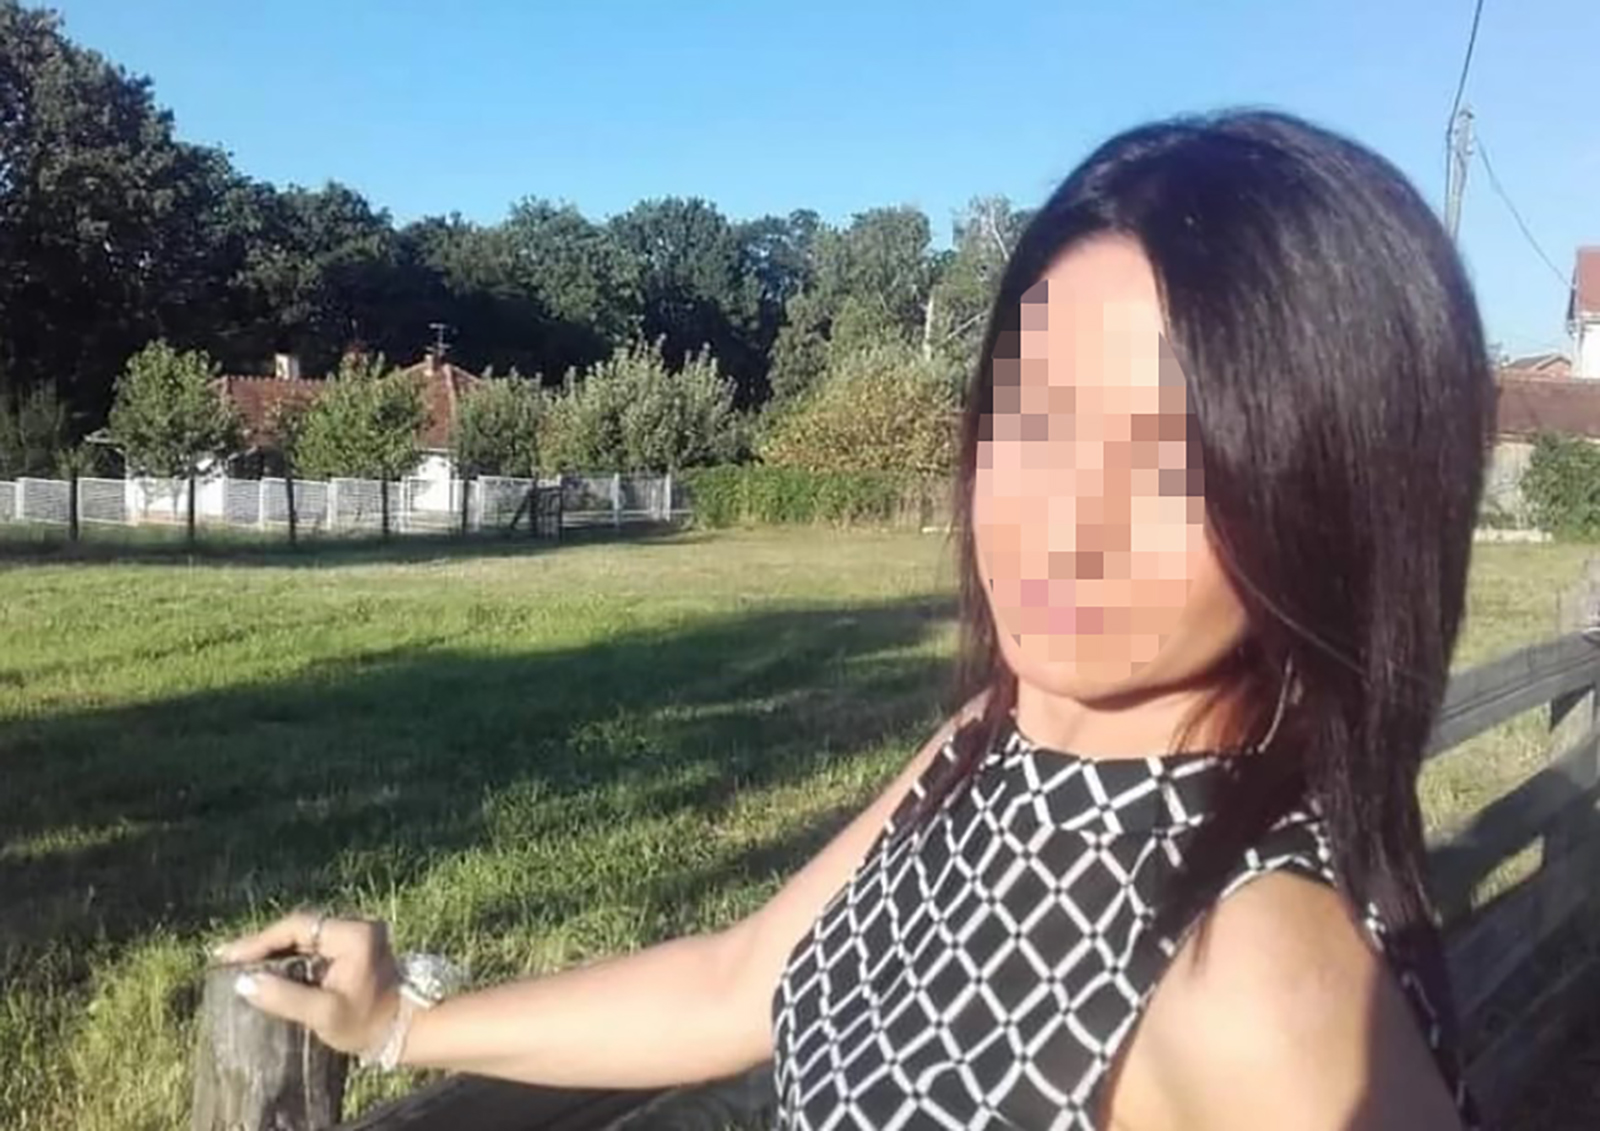 "Pretio je da će joj ubiti sina": Ovo je Lela koju je partner nasmrt izbo u stanu na Novom Beogradu